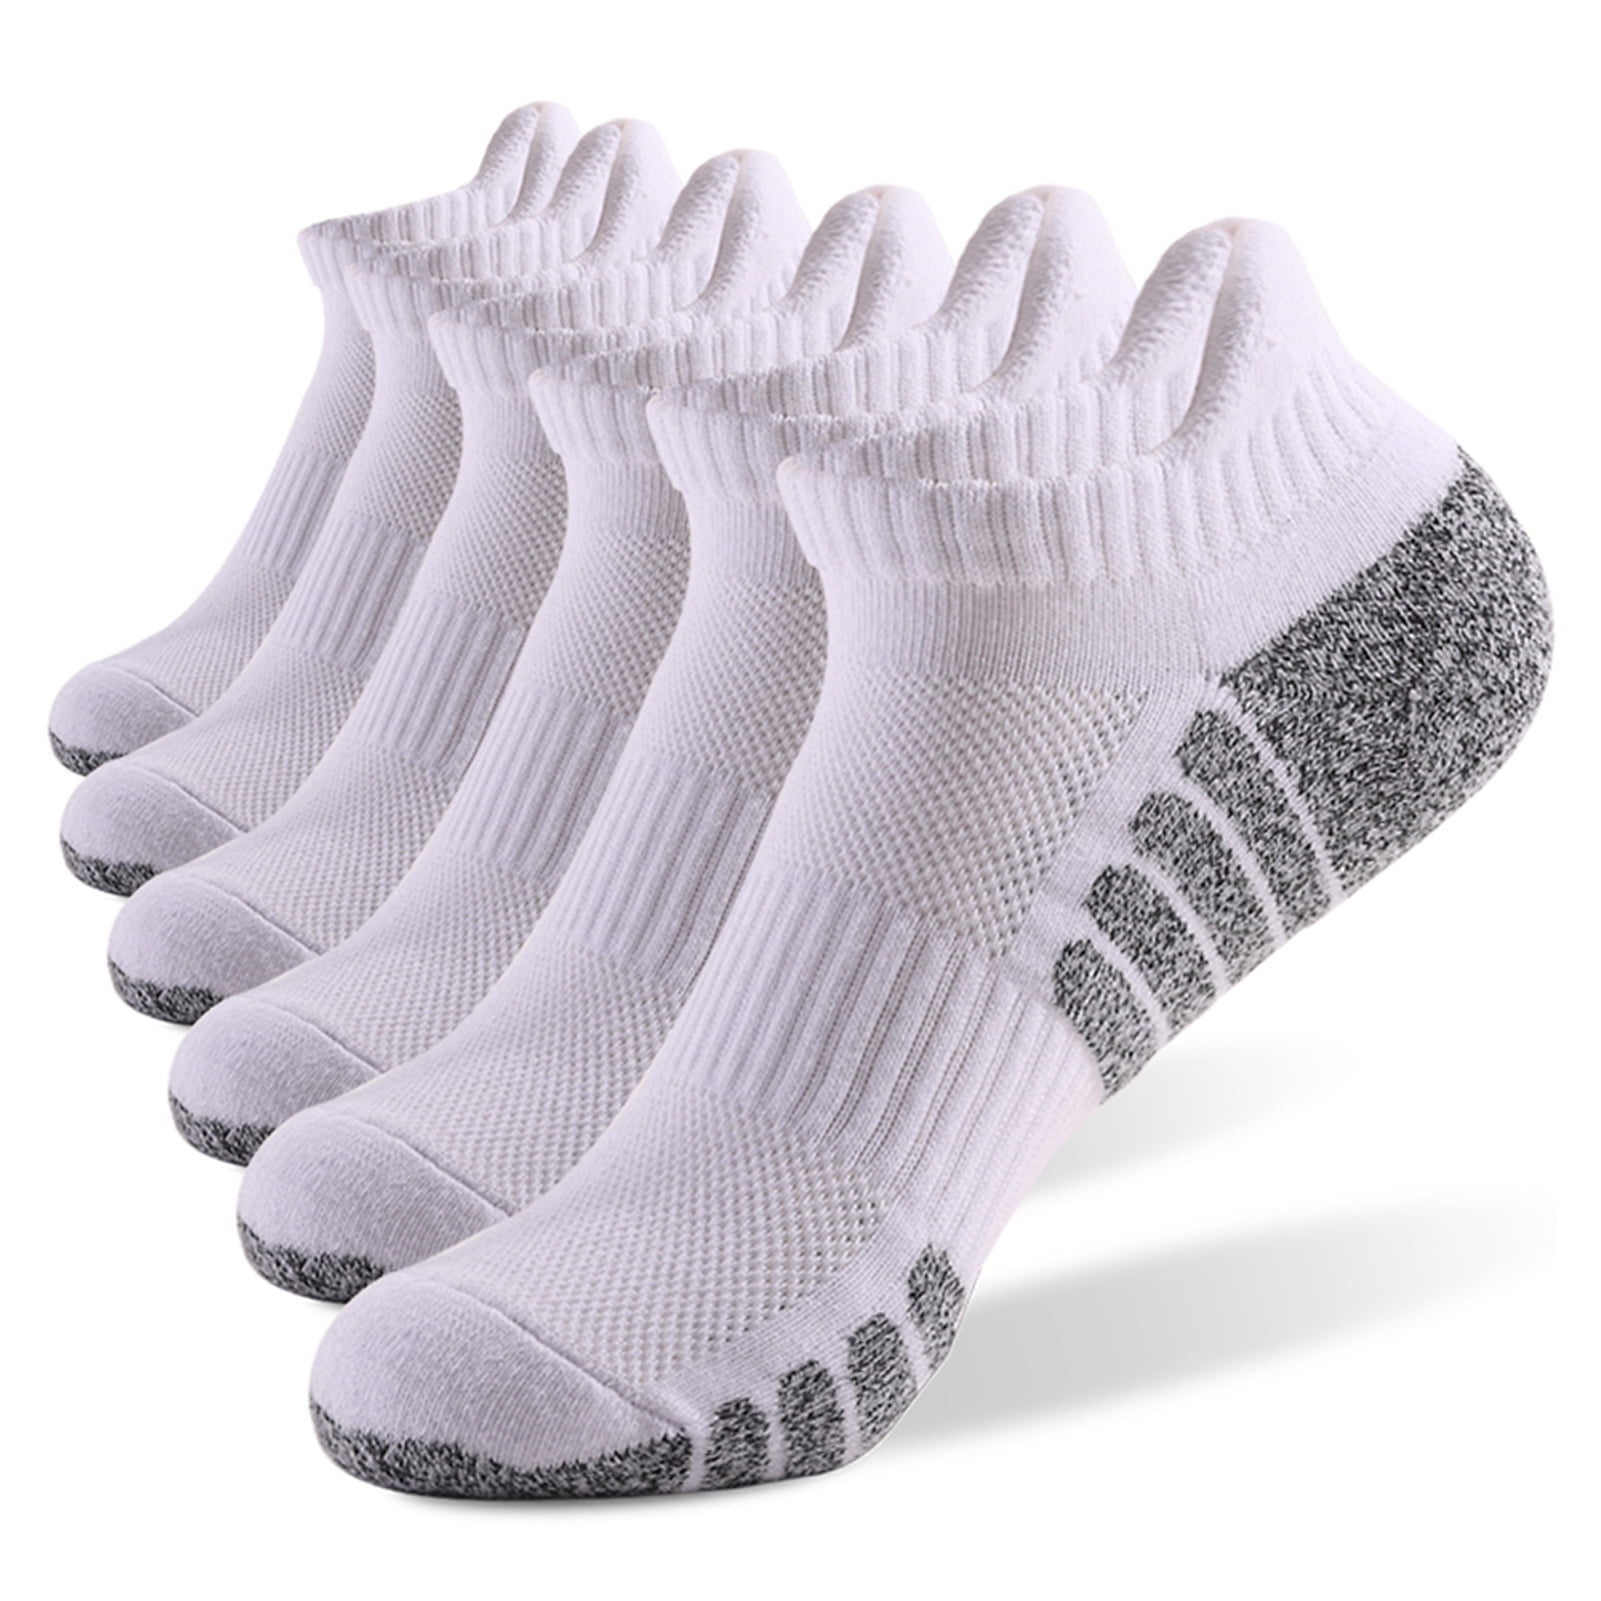 Stack Socks